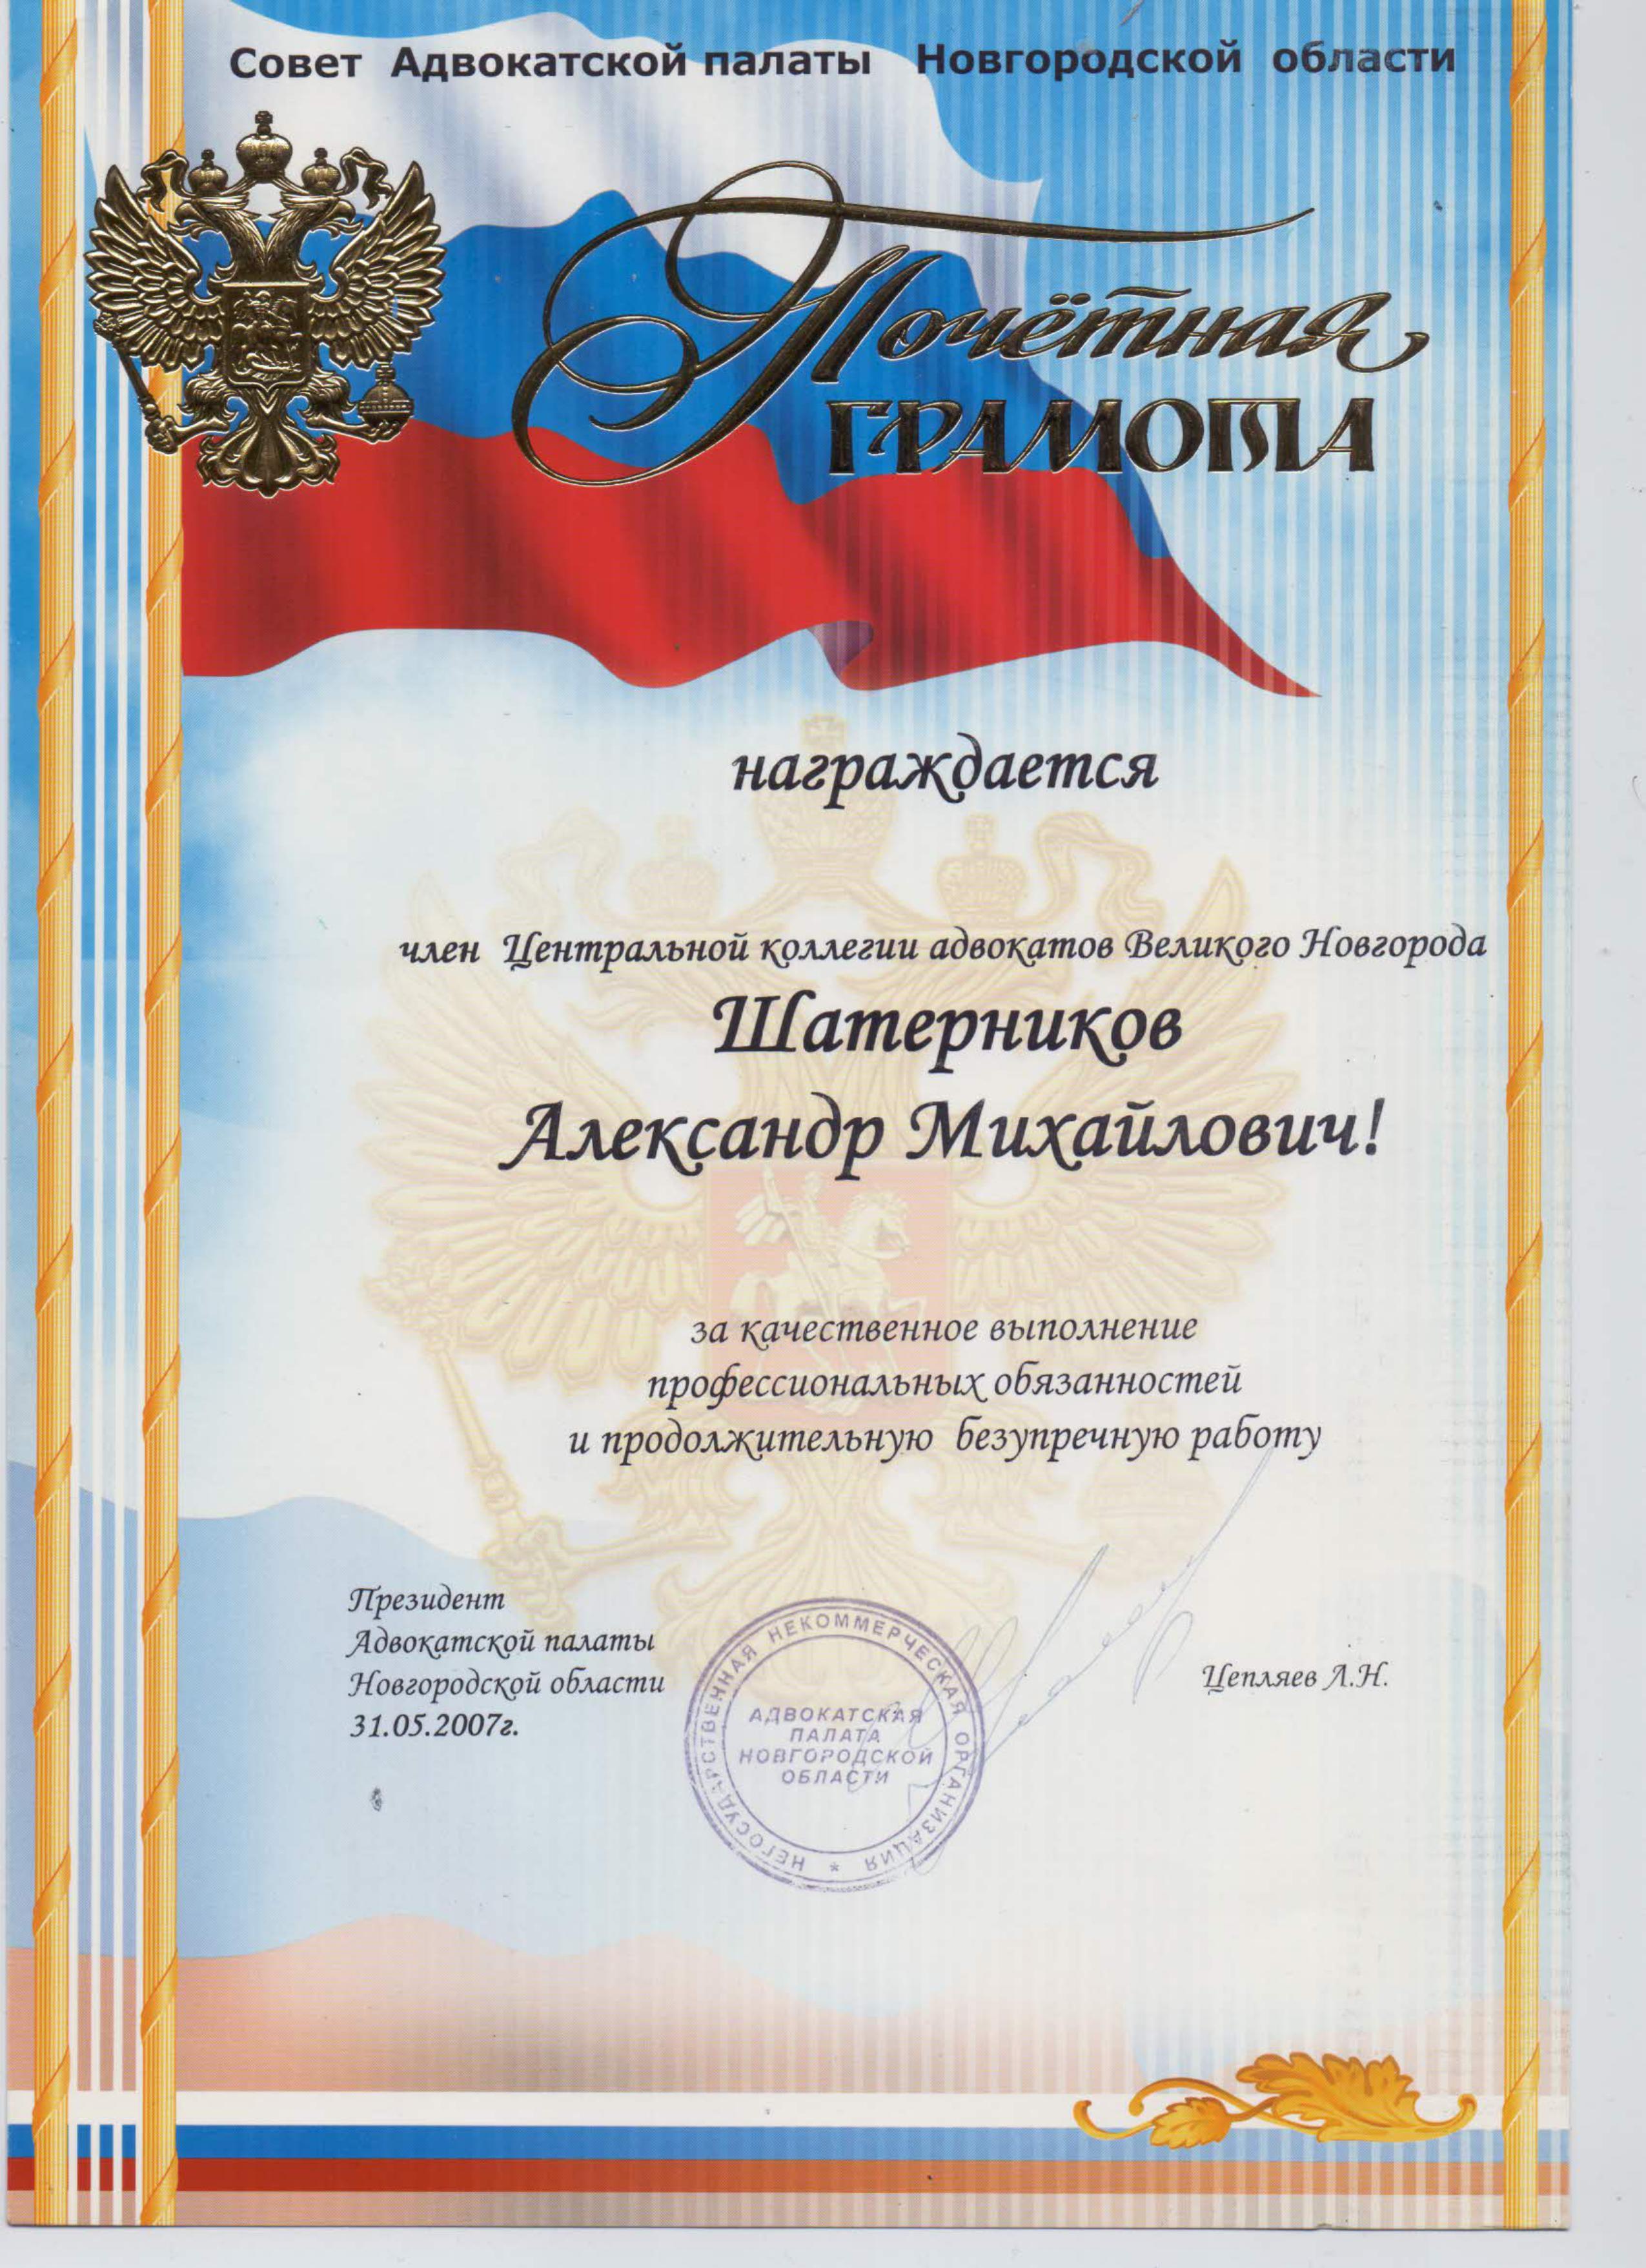 Почетная грамота от Президента Адвокатской палаты Новгородской области